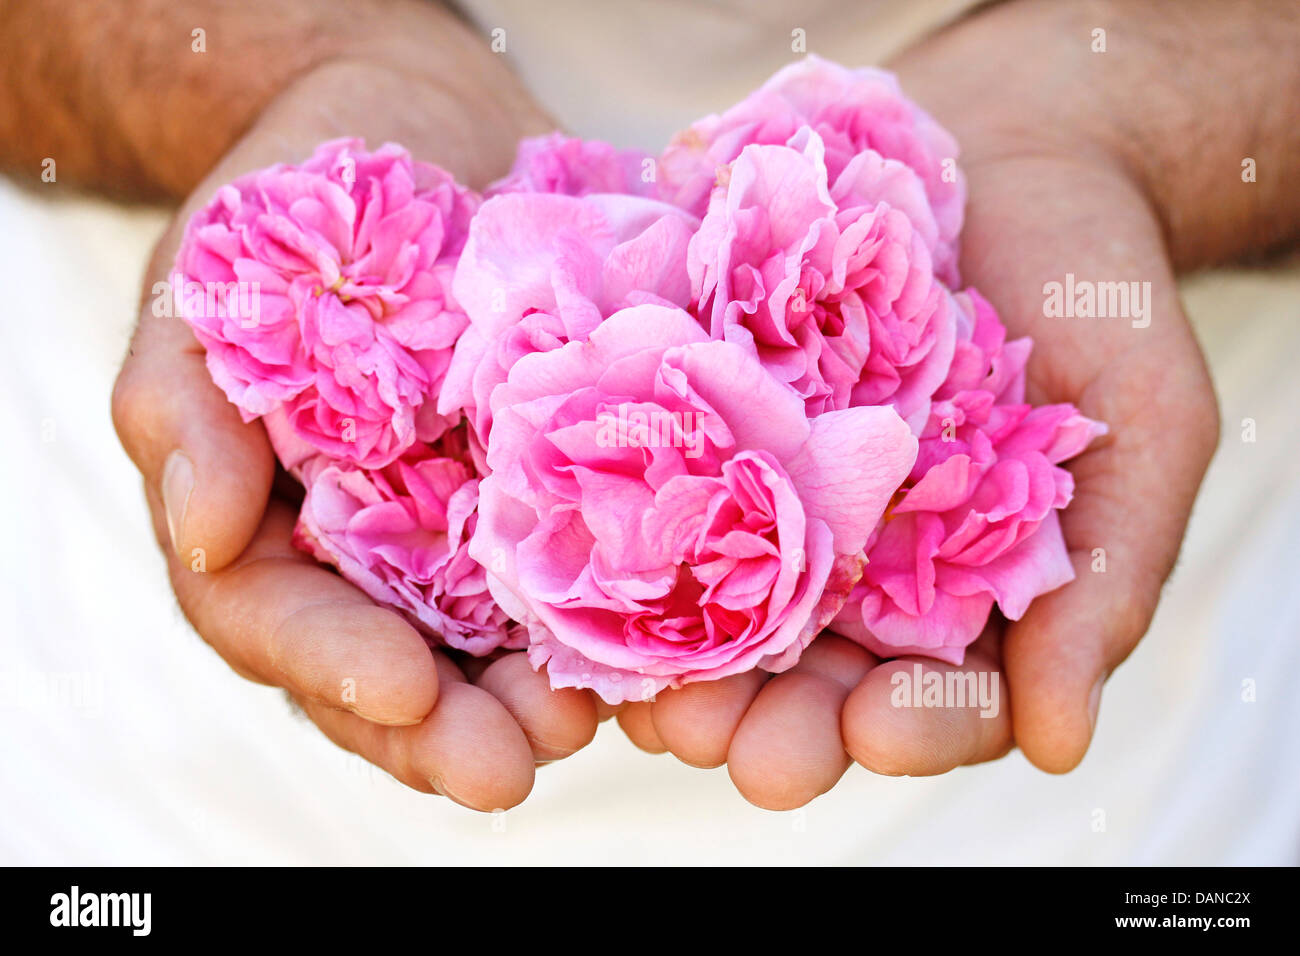 Damask rose. Rosa damascena. Stock Photo